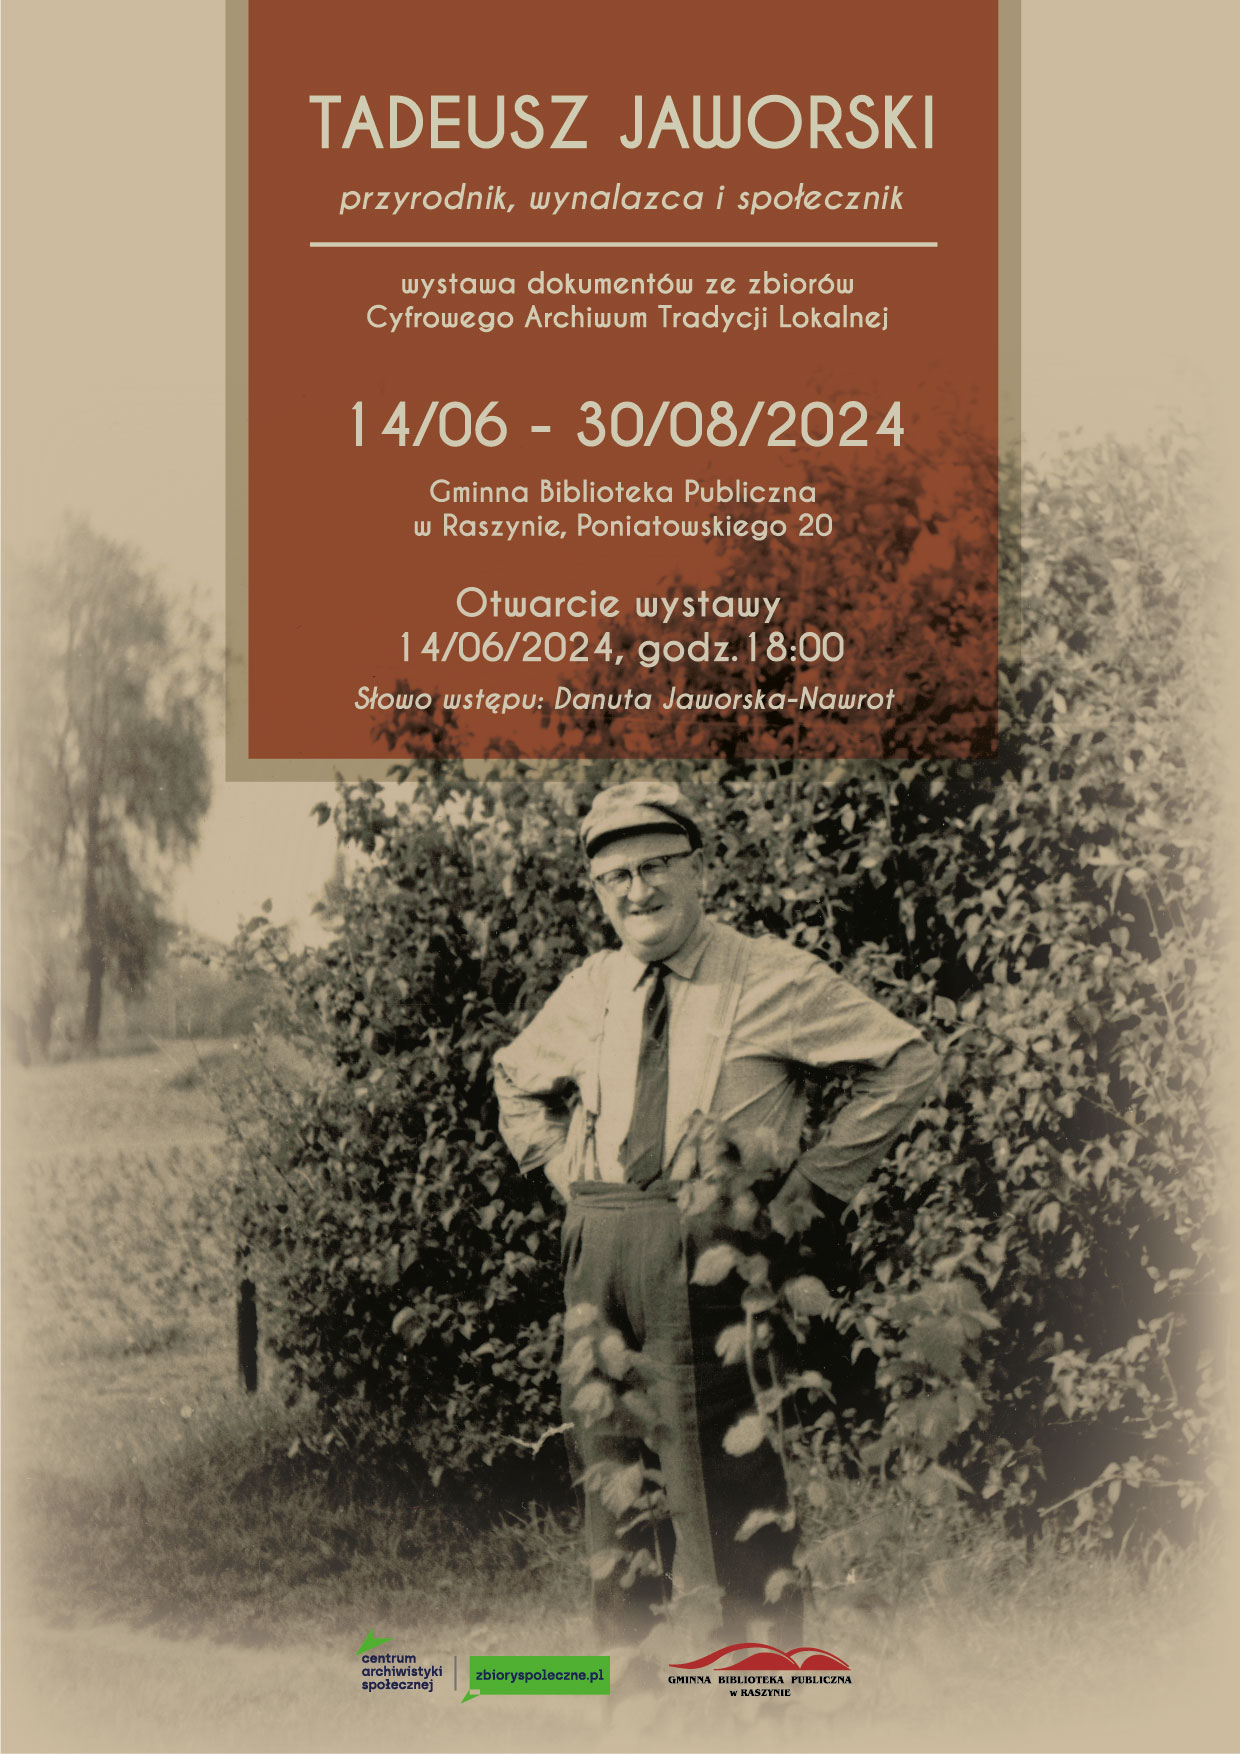 Tadeusz Jaworski - wystawa - plakat